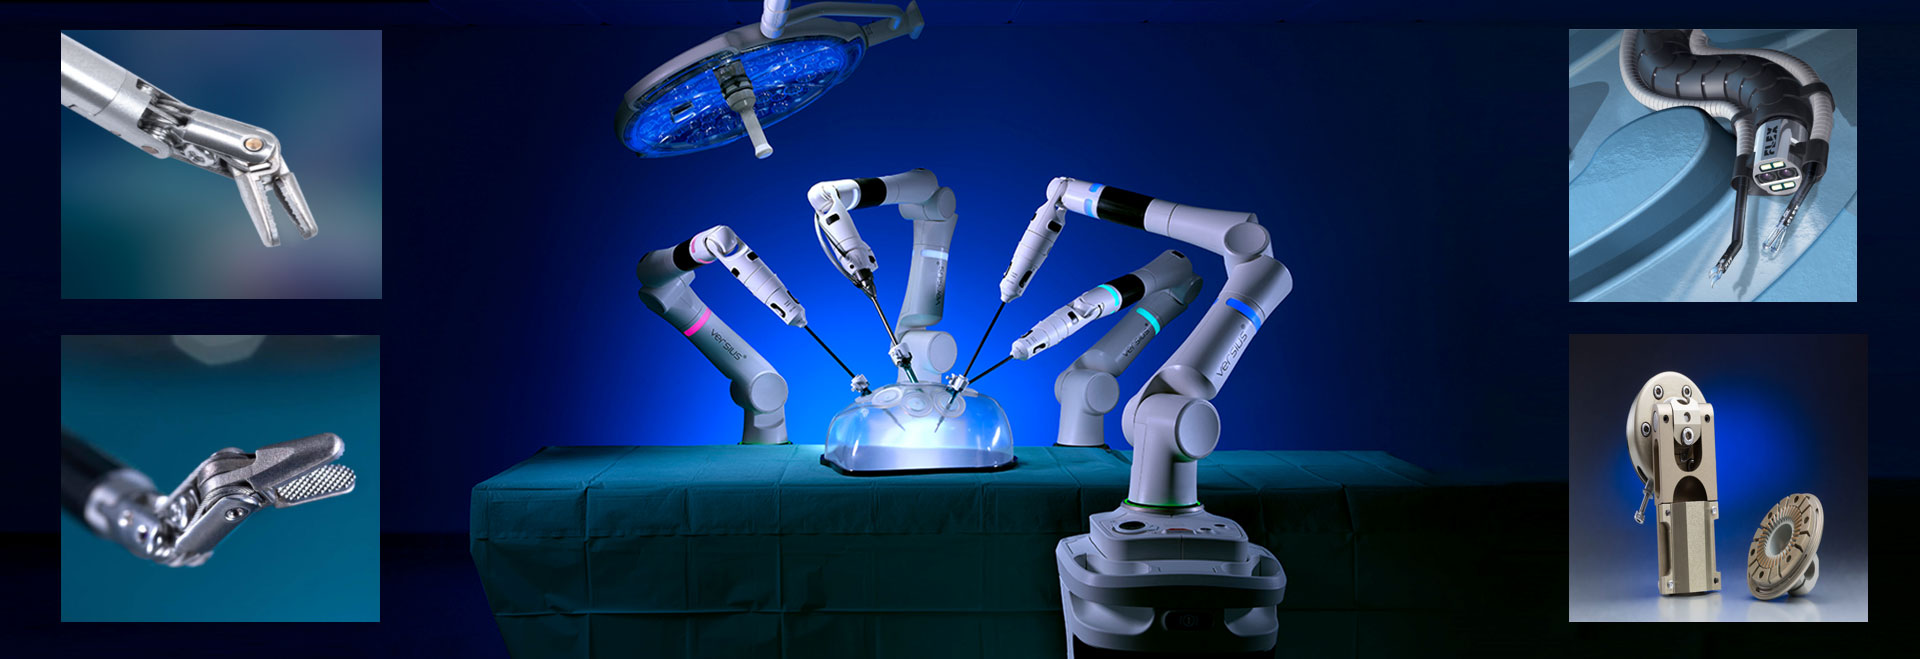 医疗机器人和设备